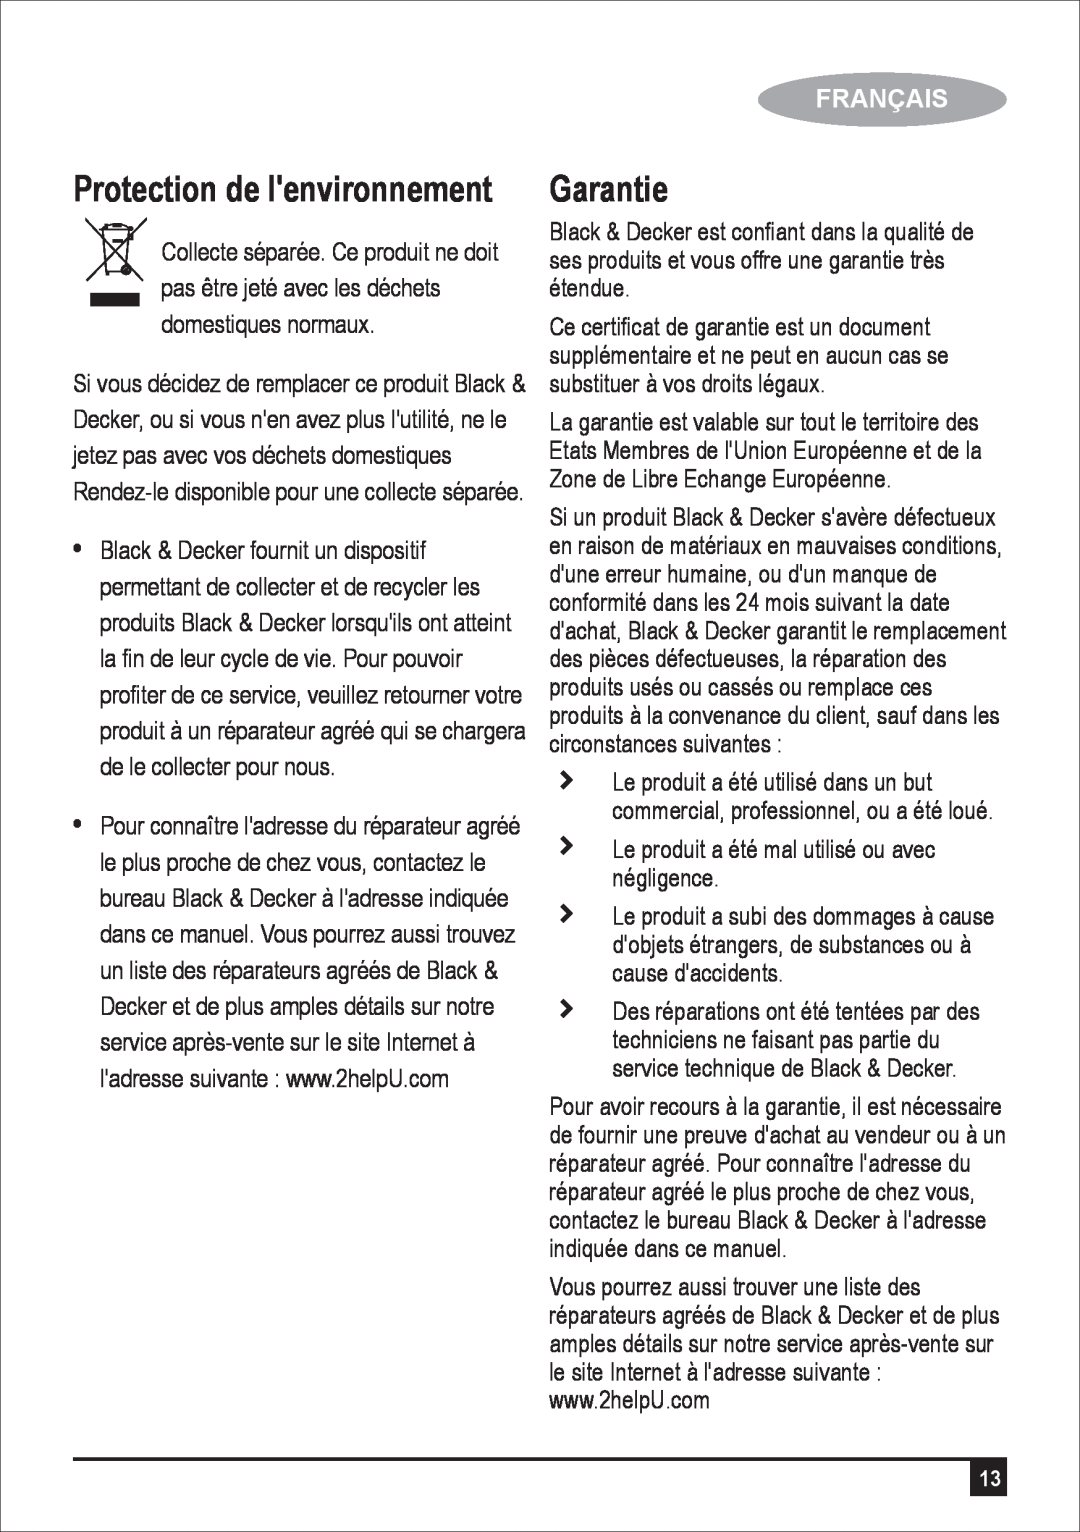 Black & Decker JC400 manual Protection de lenvironnement, Garantie, Français 